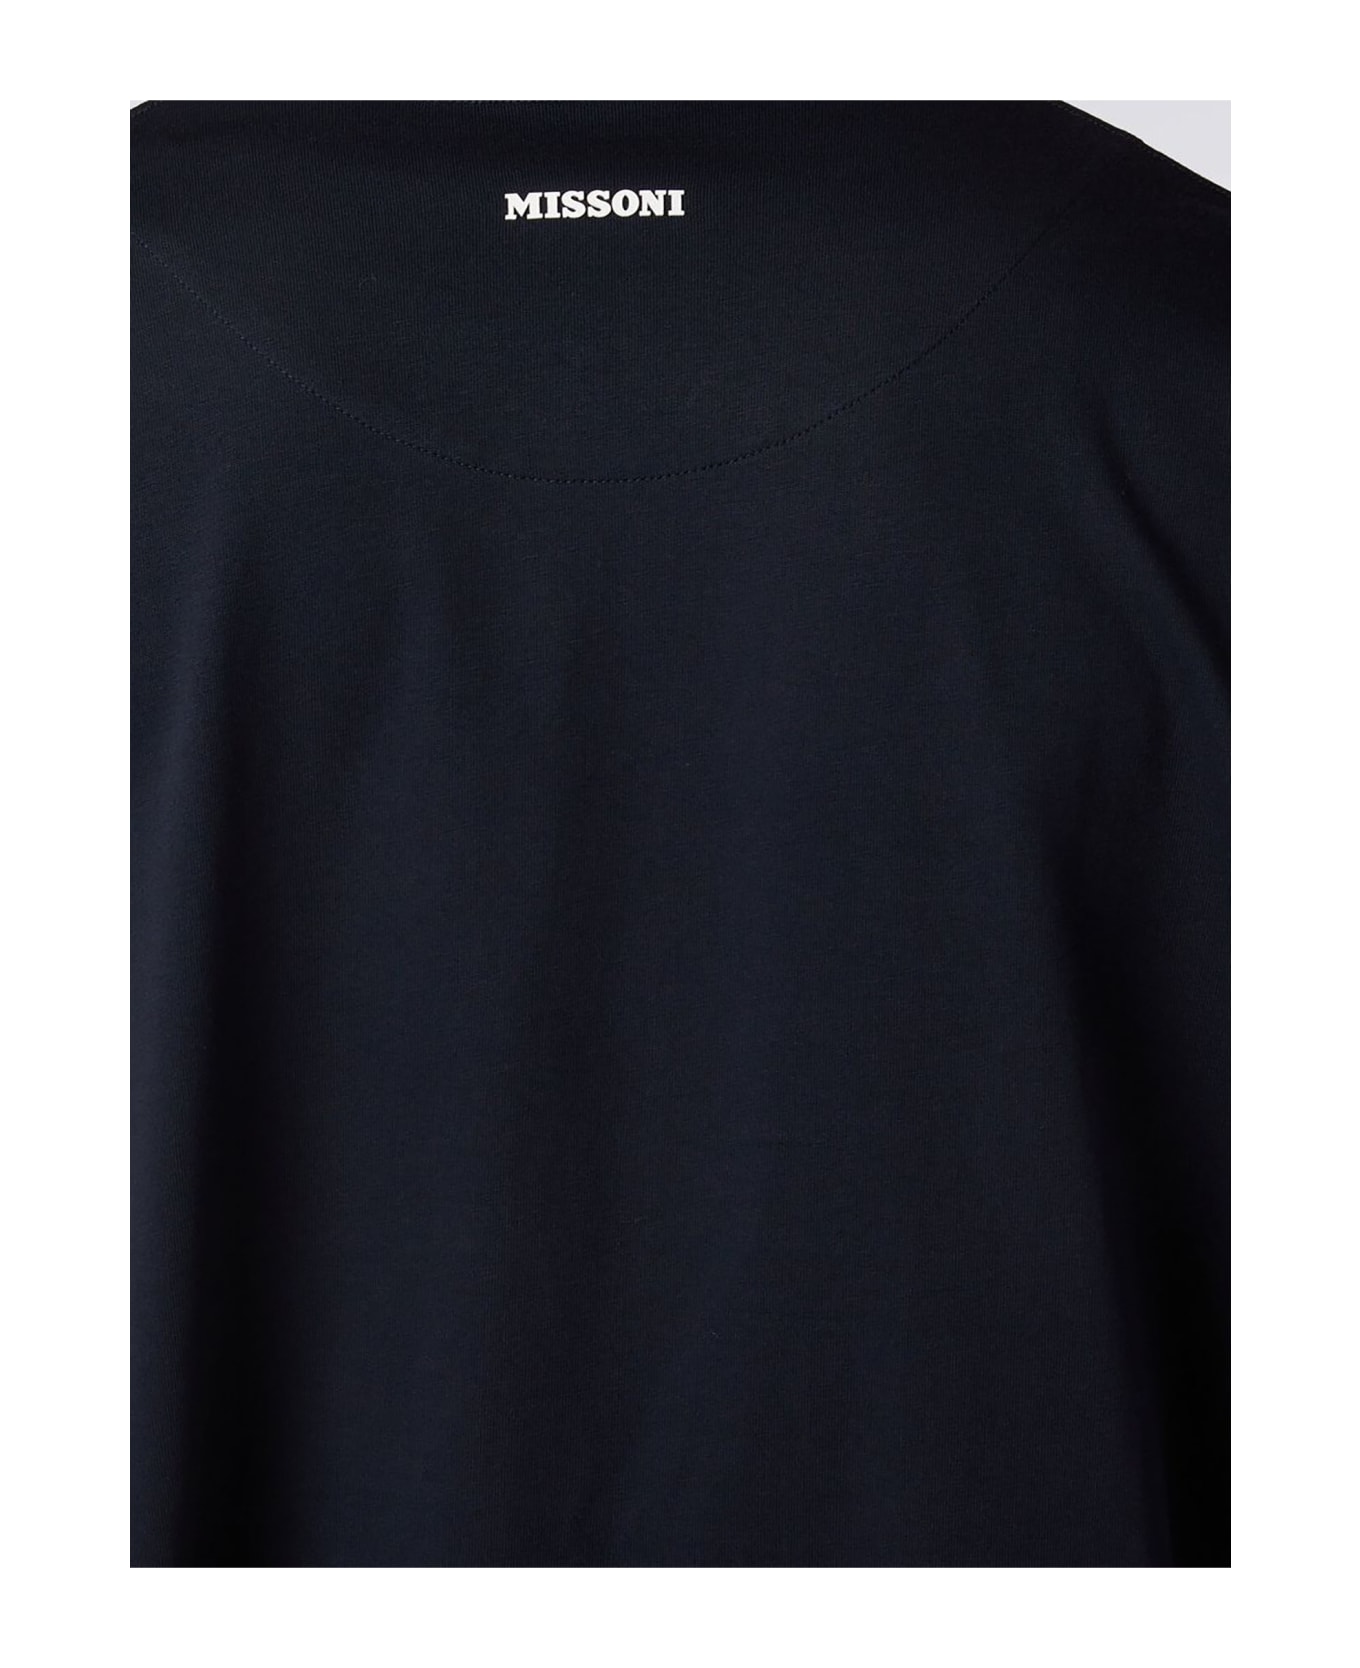 Missoni T-shirts And Polos Black - Black シャツ